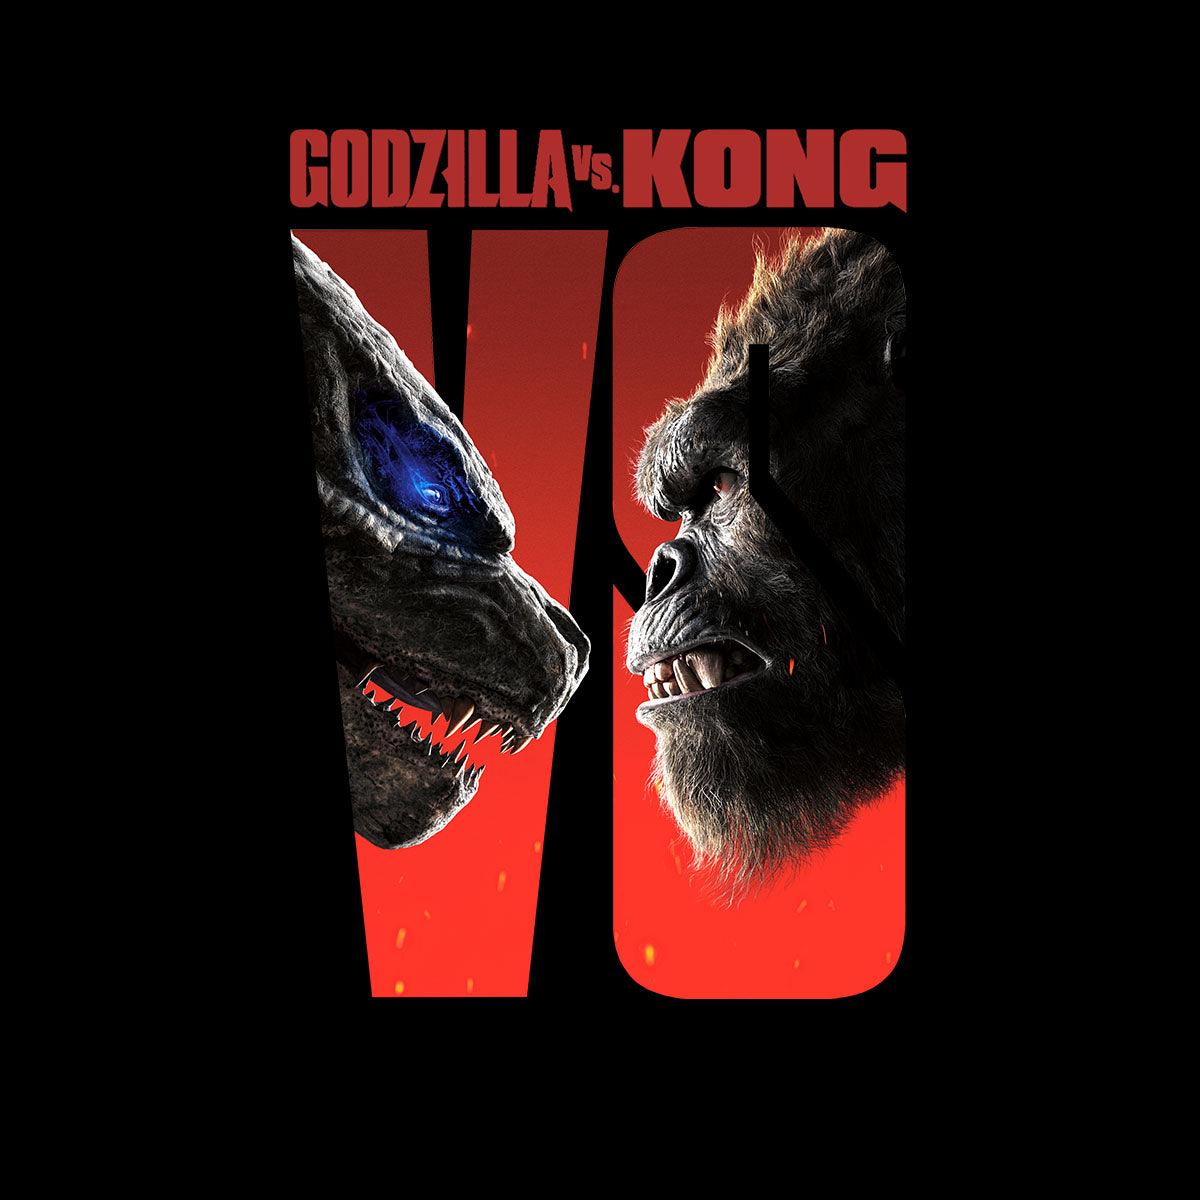 Godzilla vs Kon| Perfect Gift | Backpack